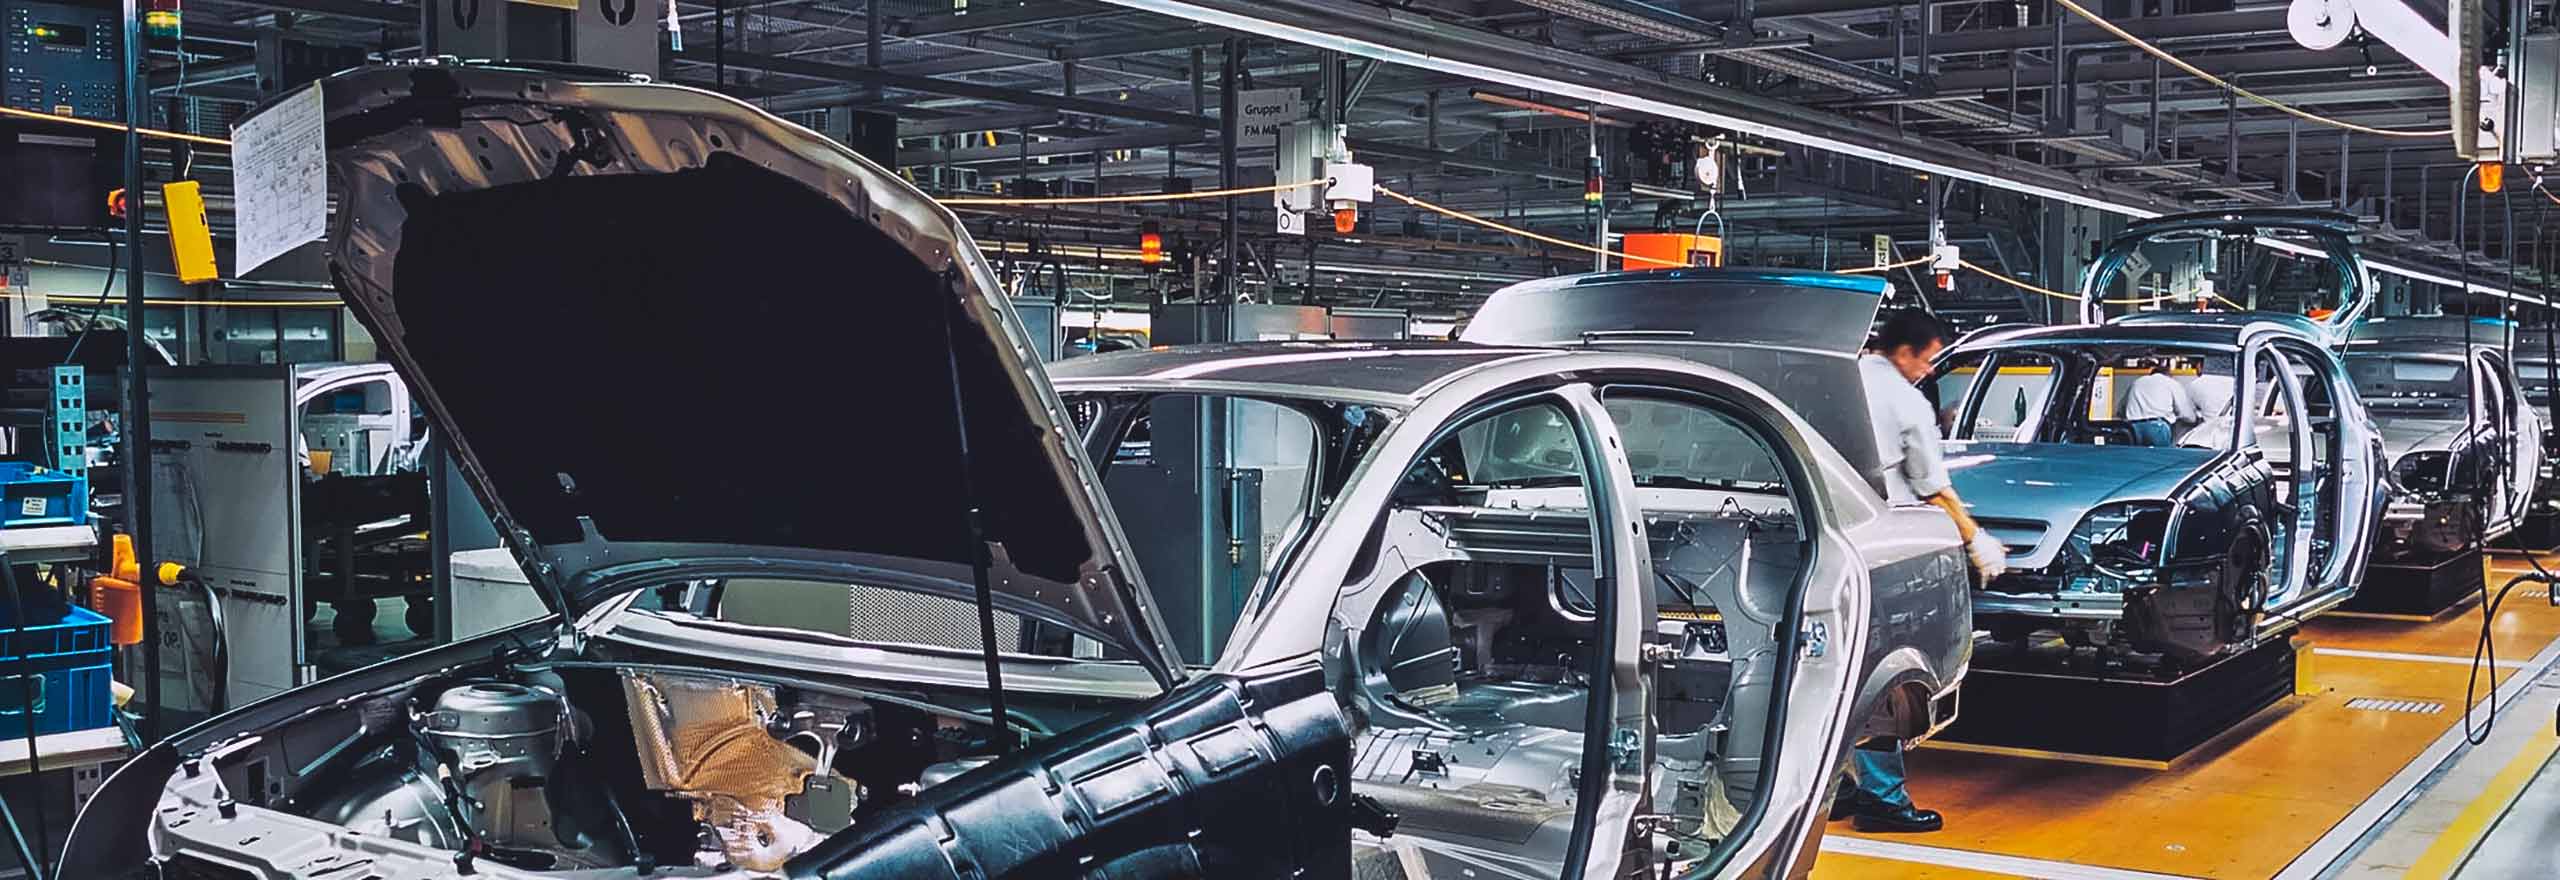 Detailansicht einer Montagelinie in der Automobilindustrie, die die Einhaltung von Prozessen und die Verantwortlichkeit des Bedieners zeigt